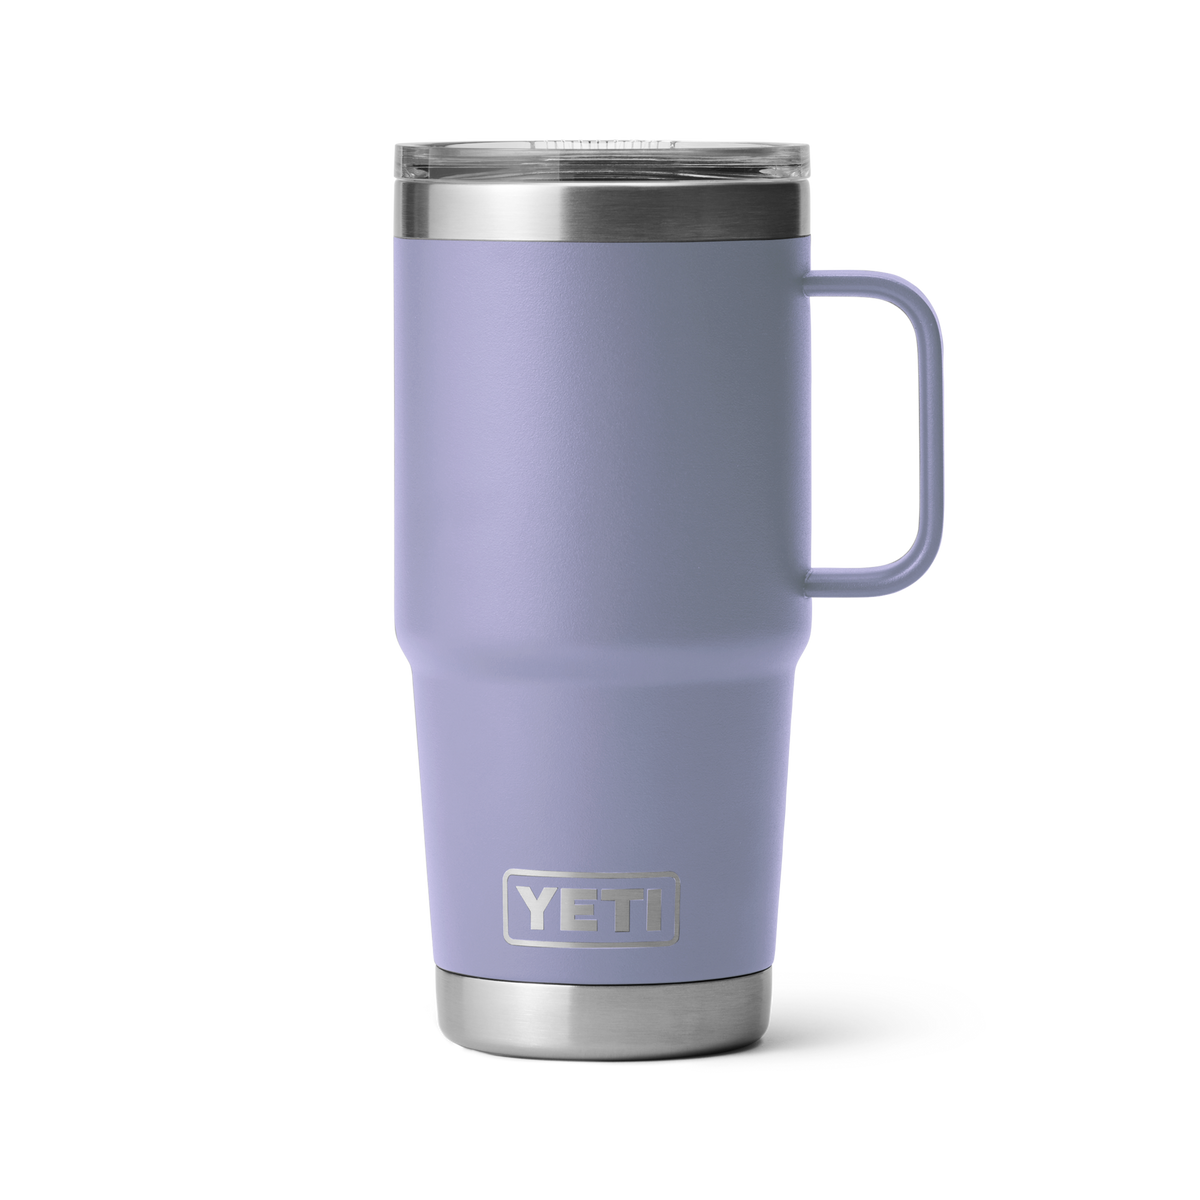 Yeti Rambler 20oz Travel Mug with Stronghold Lid